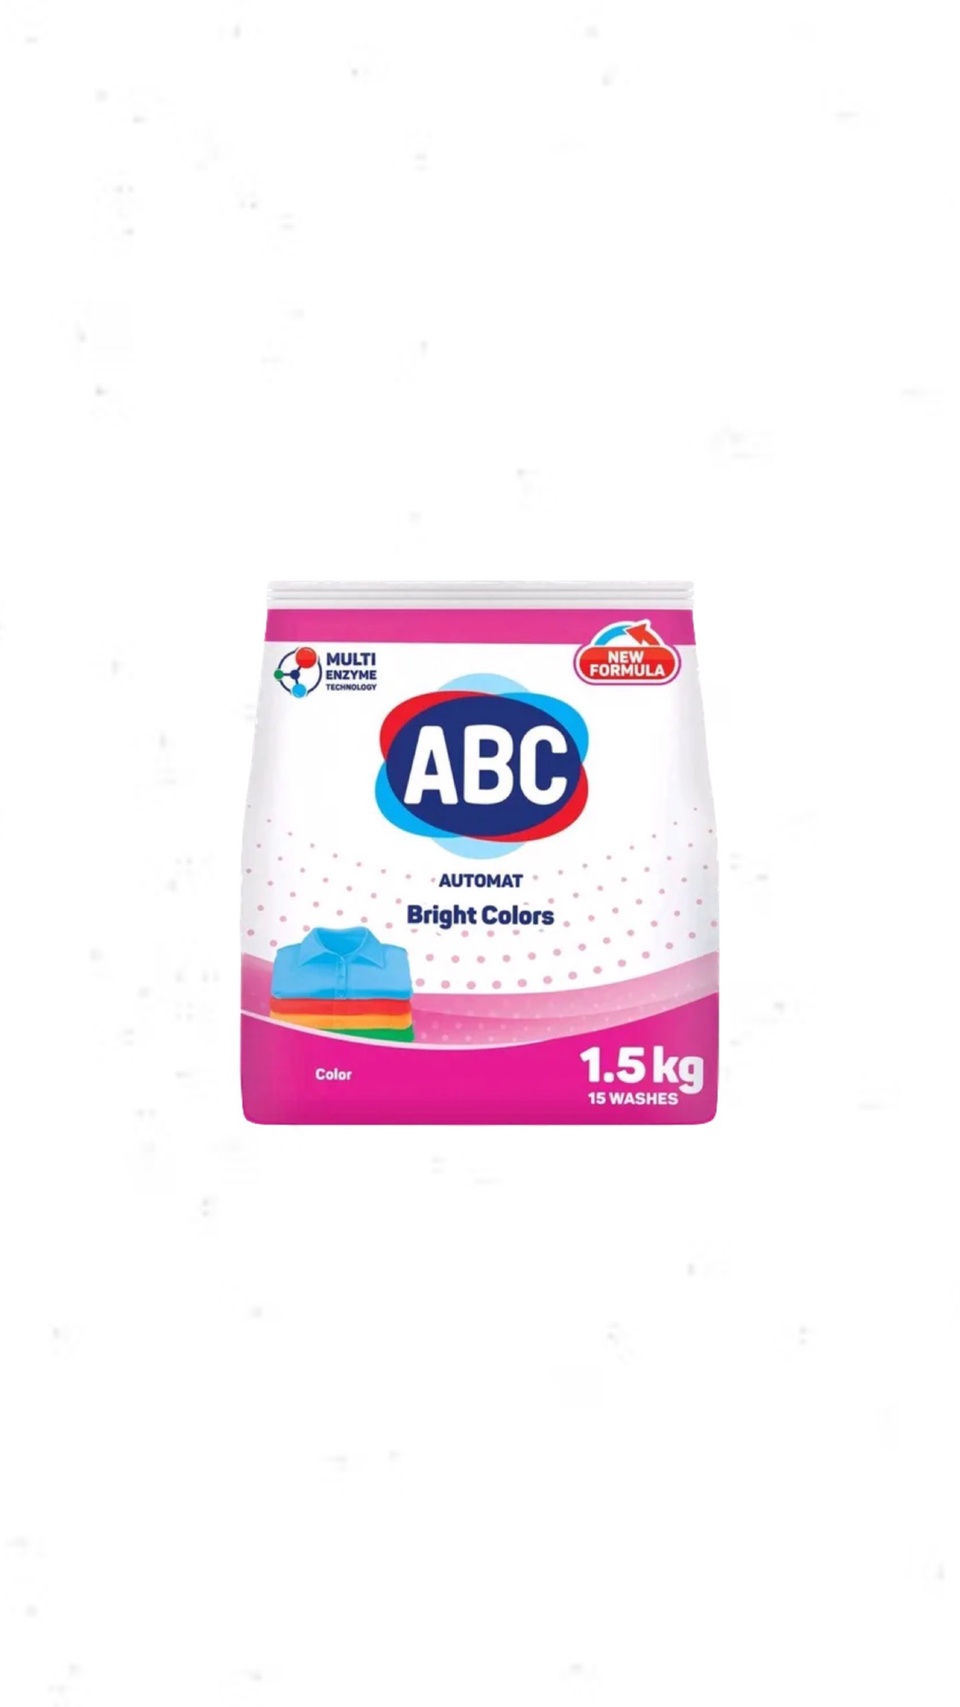 Стиральный порошок ABC Bright Colors Автомат 1,5 кг - 300 ₽, заказать онлайн.